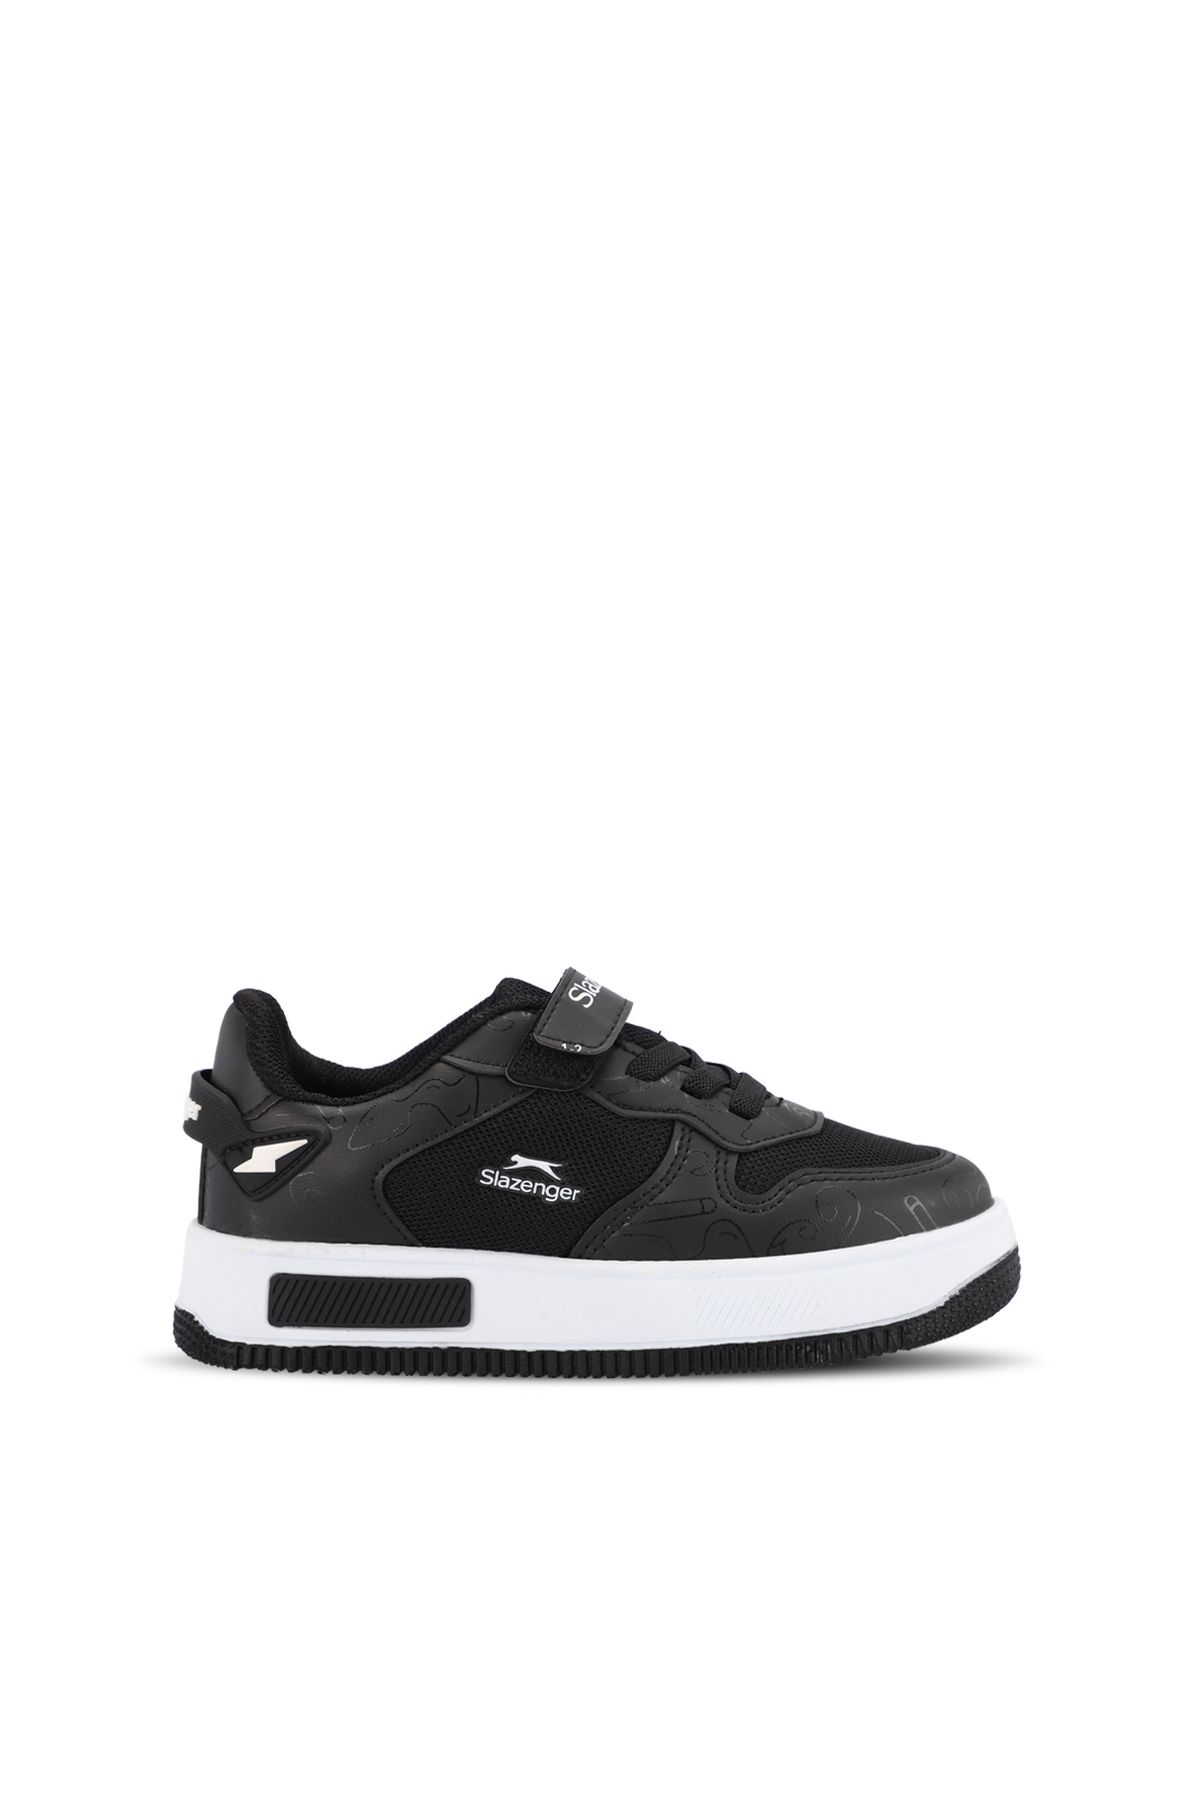 Slazenger PREAT Unisex Çocuk Sneaker Ayakkabı Siyah / Beyaz